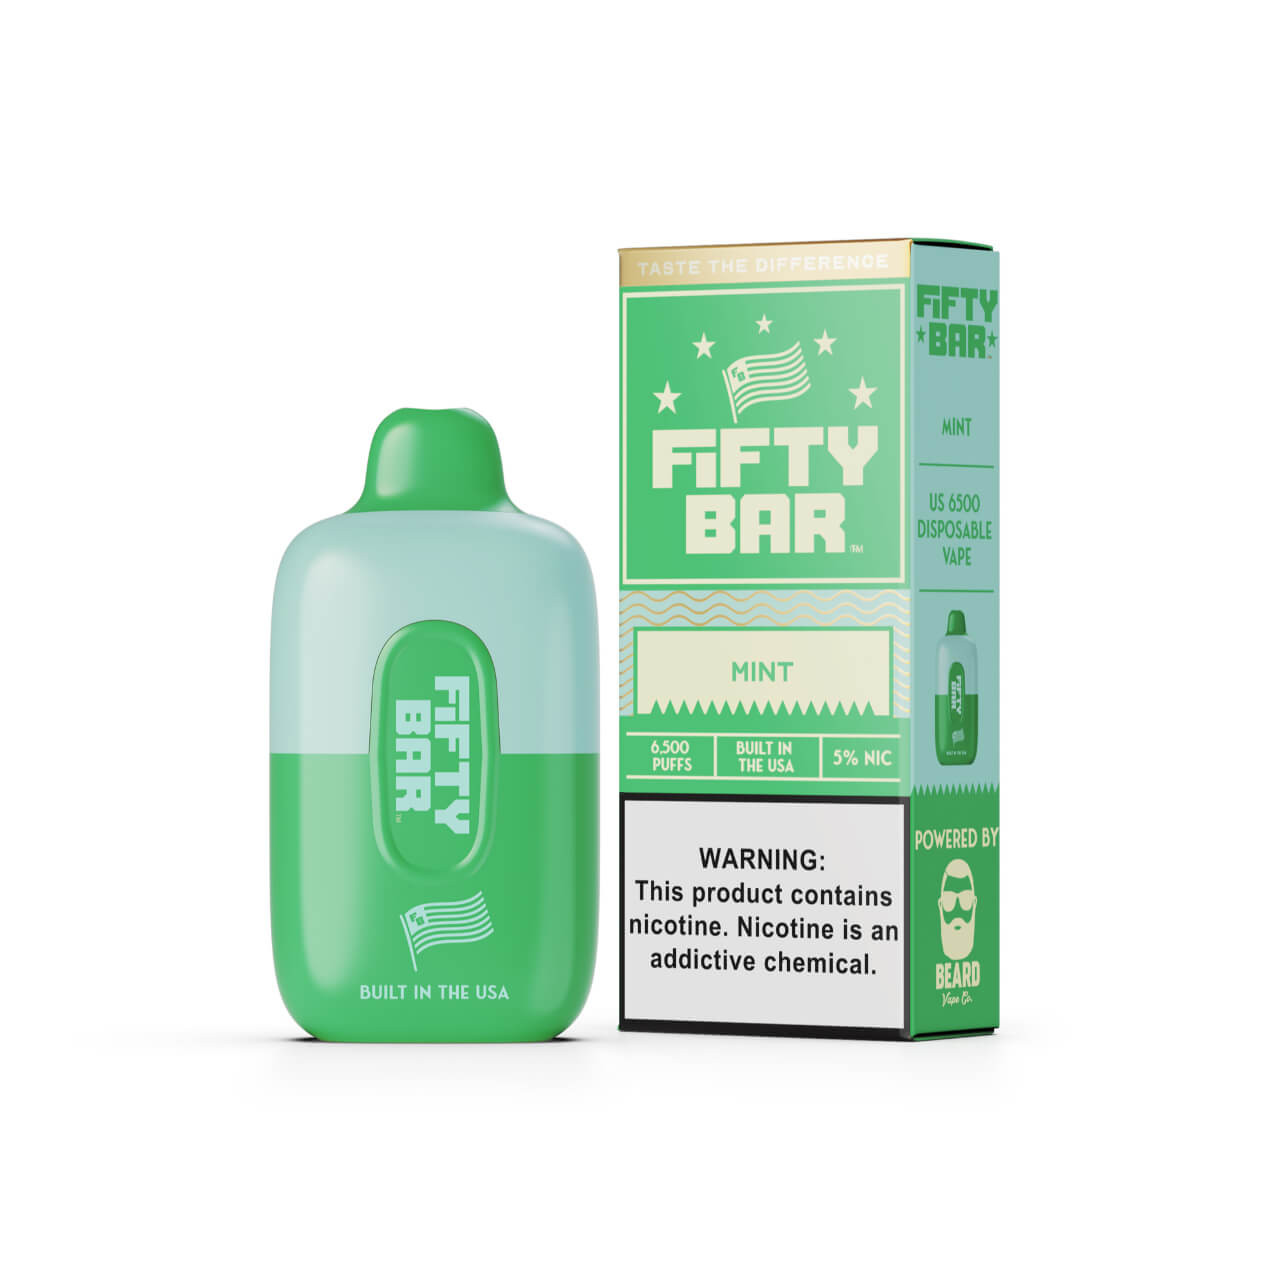 Fifty Bar Disposable (6500 Puffs)-mint